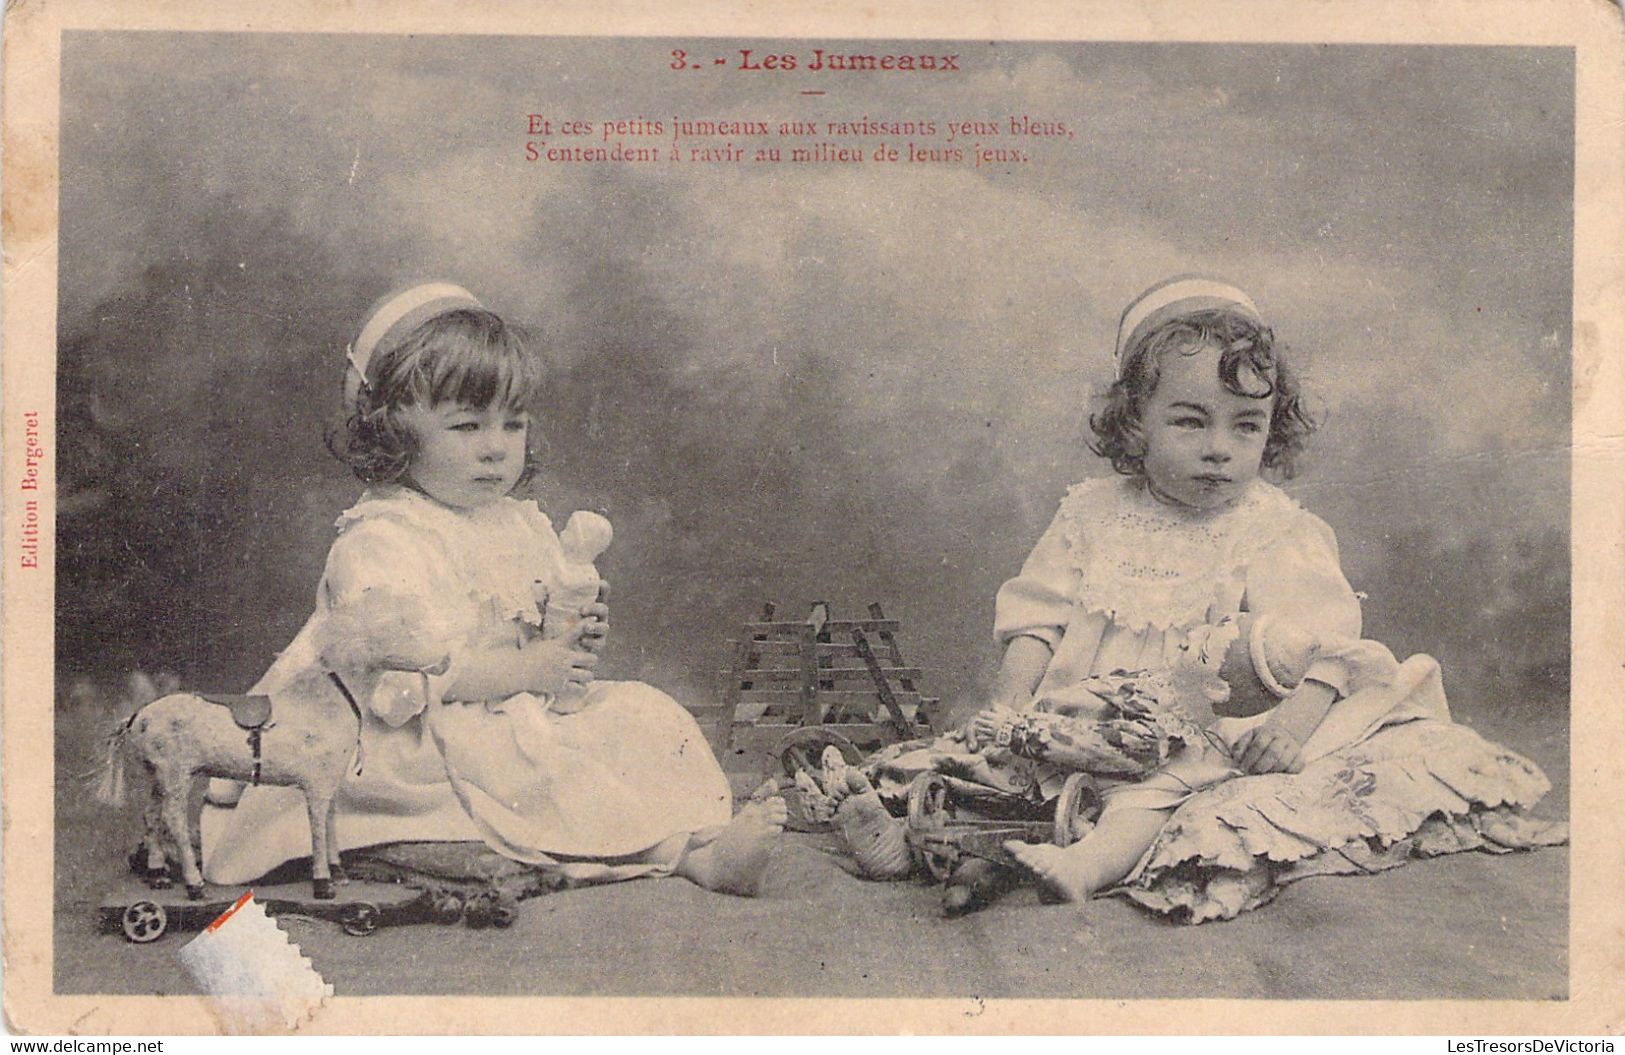 CPA Petites Filles - Les Jumeaux - Jumelles En Train De Jouer - Obliteration 1906 - Groepen Kinderen En Familie